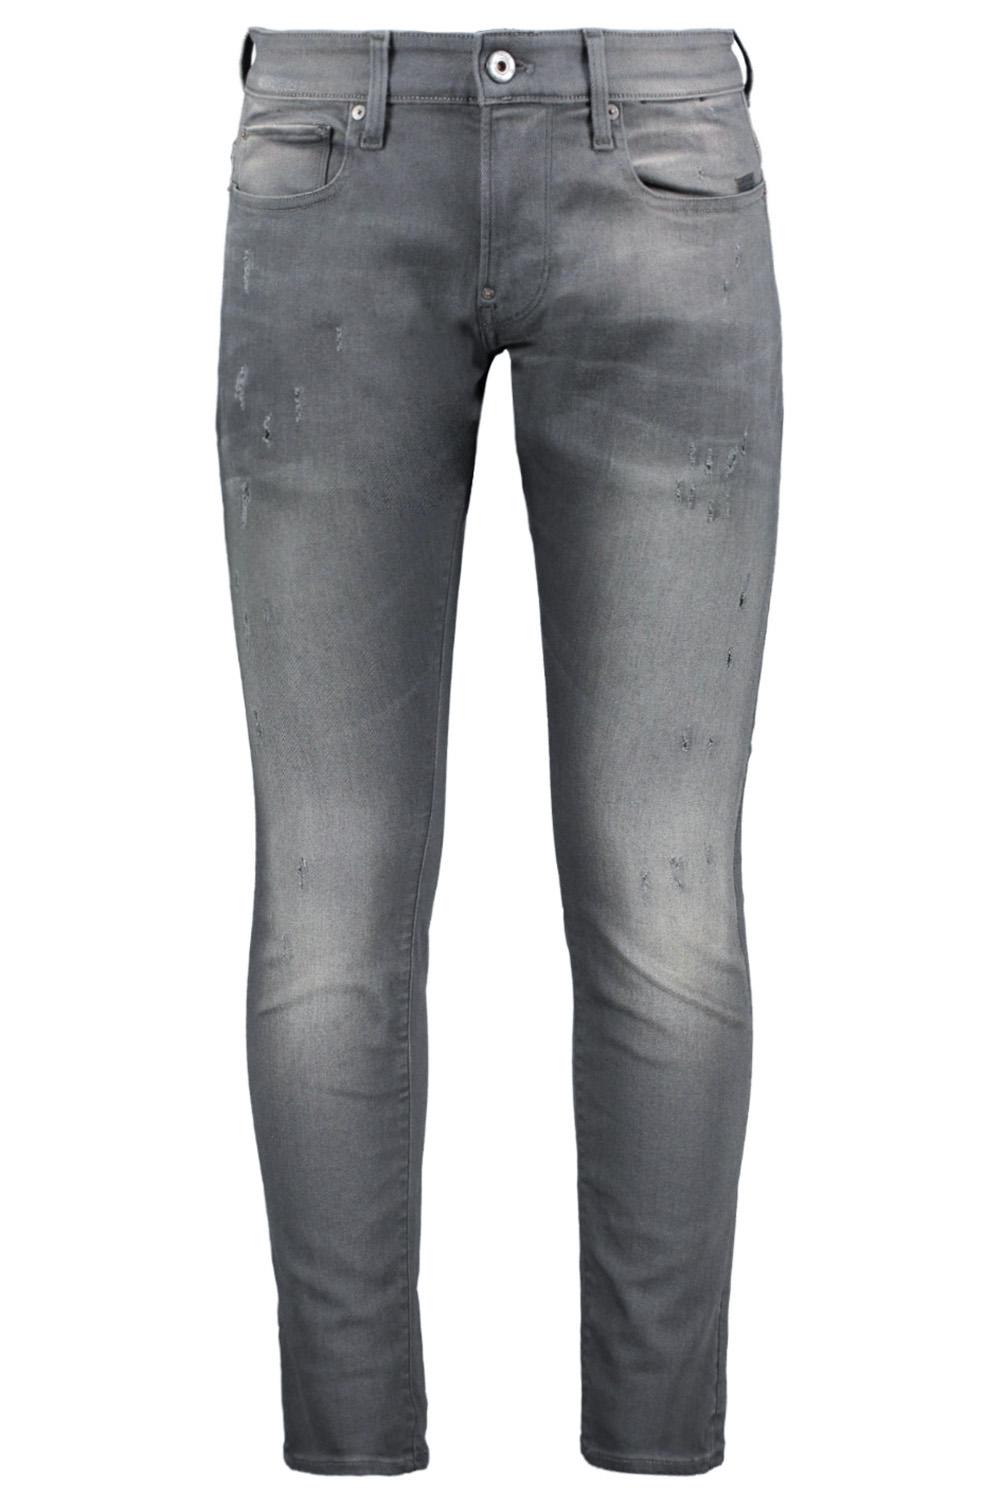 onszelf Sandy markt revend skinny jeans 51010 6132 g-star raw jeans 1243 lt aged destroy